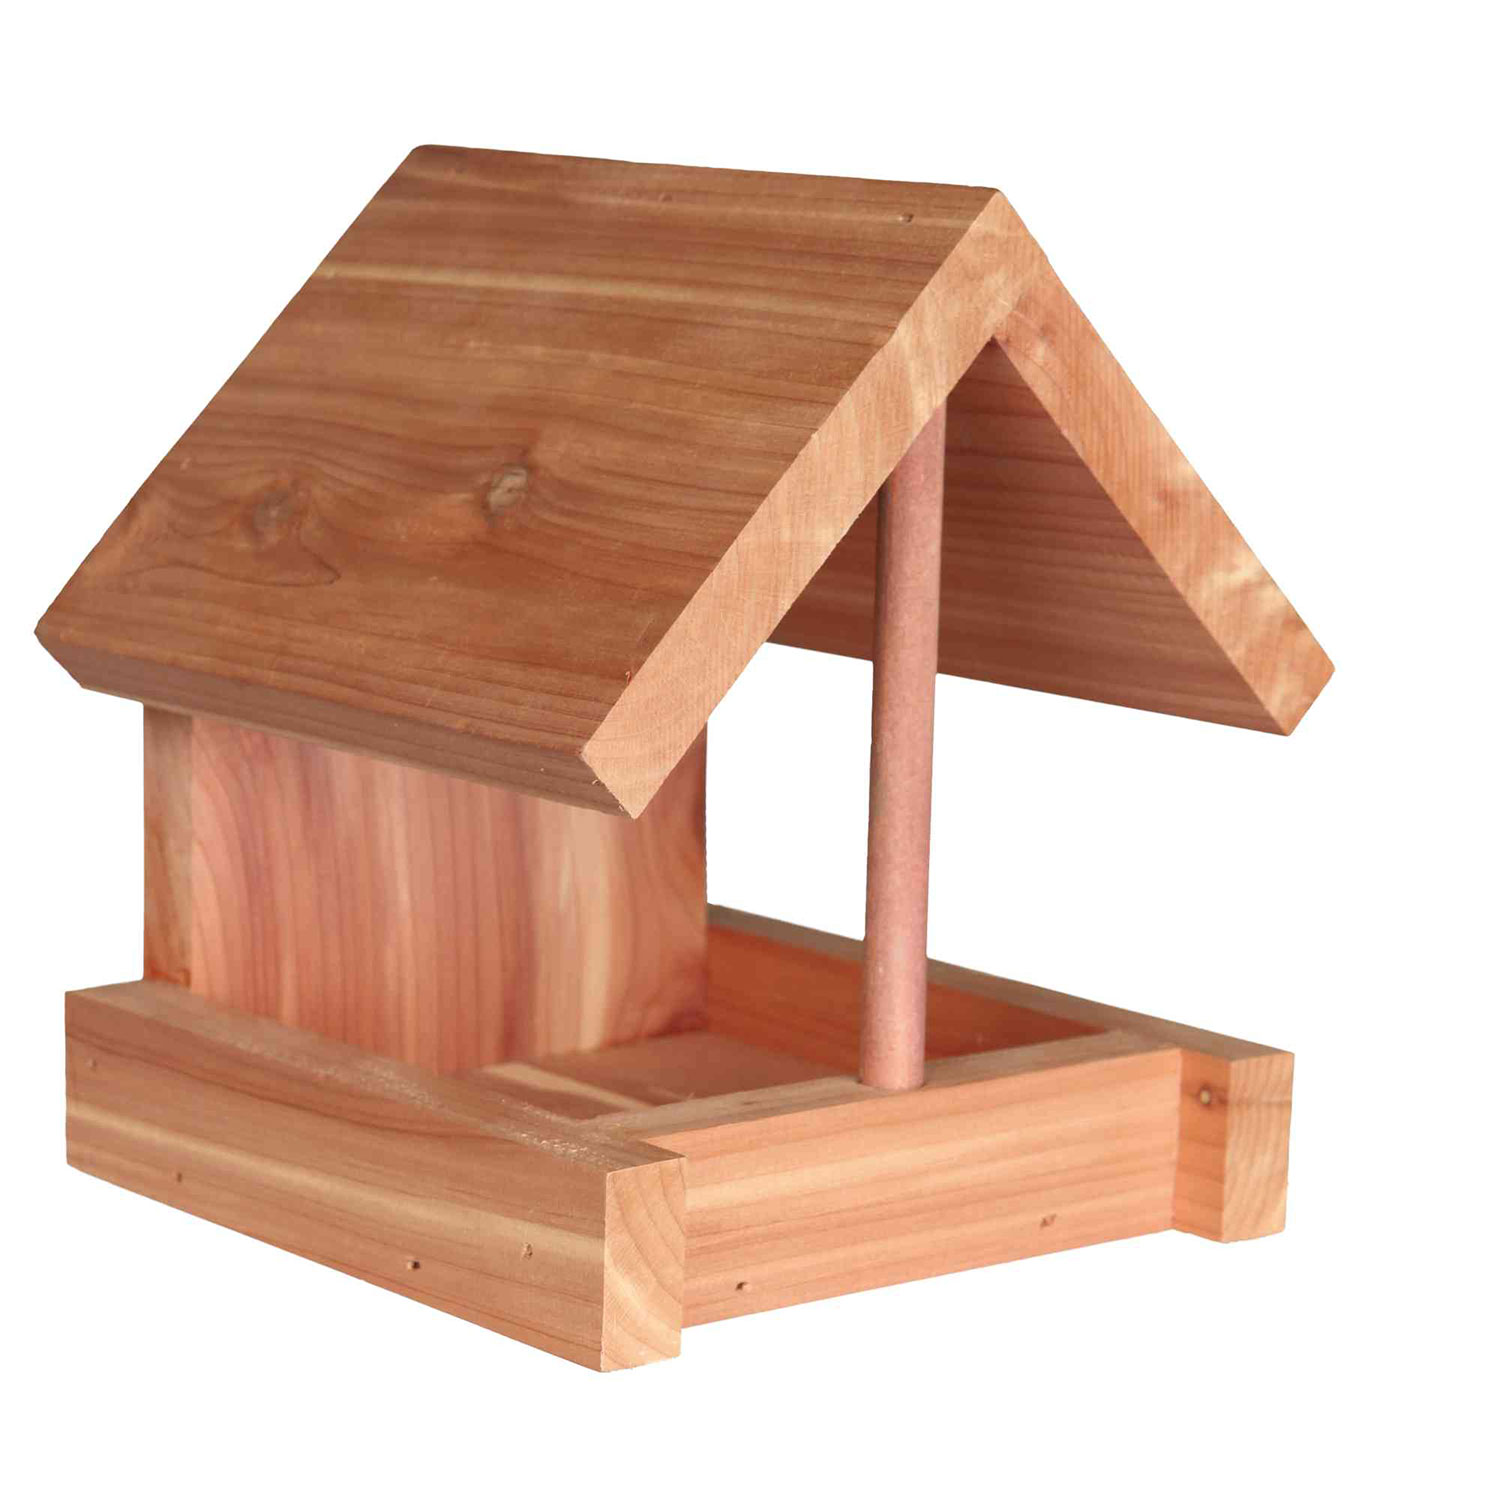 Comederos Para Aves al aire libre con madera natural Madera De Cedro Decoración Para Alimentos Semillas Trixie 